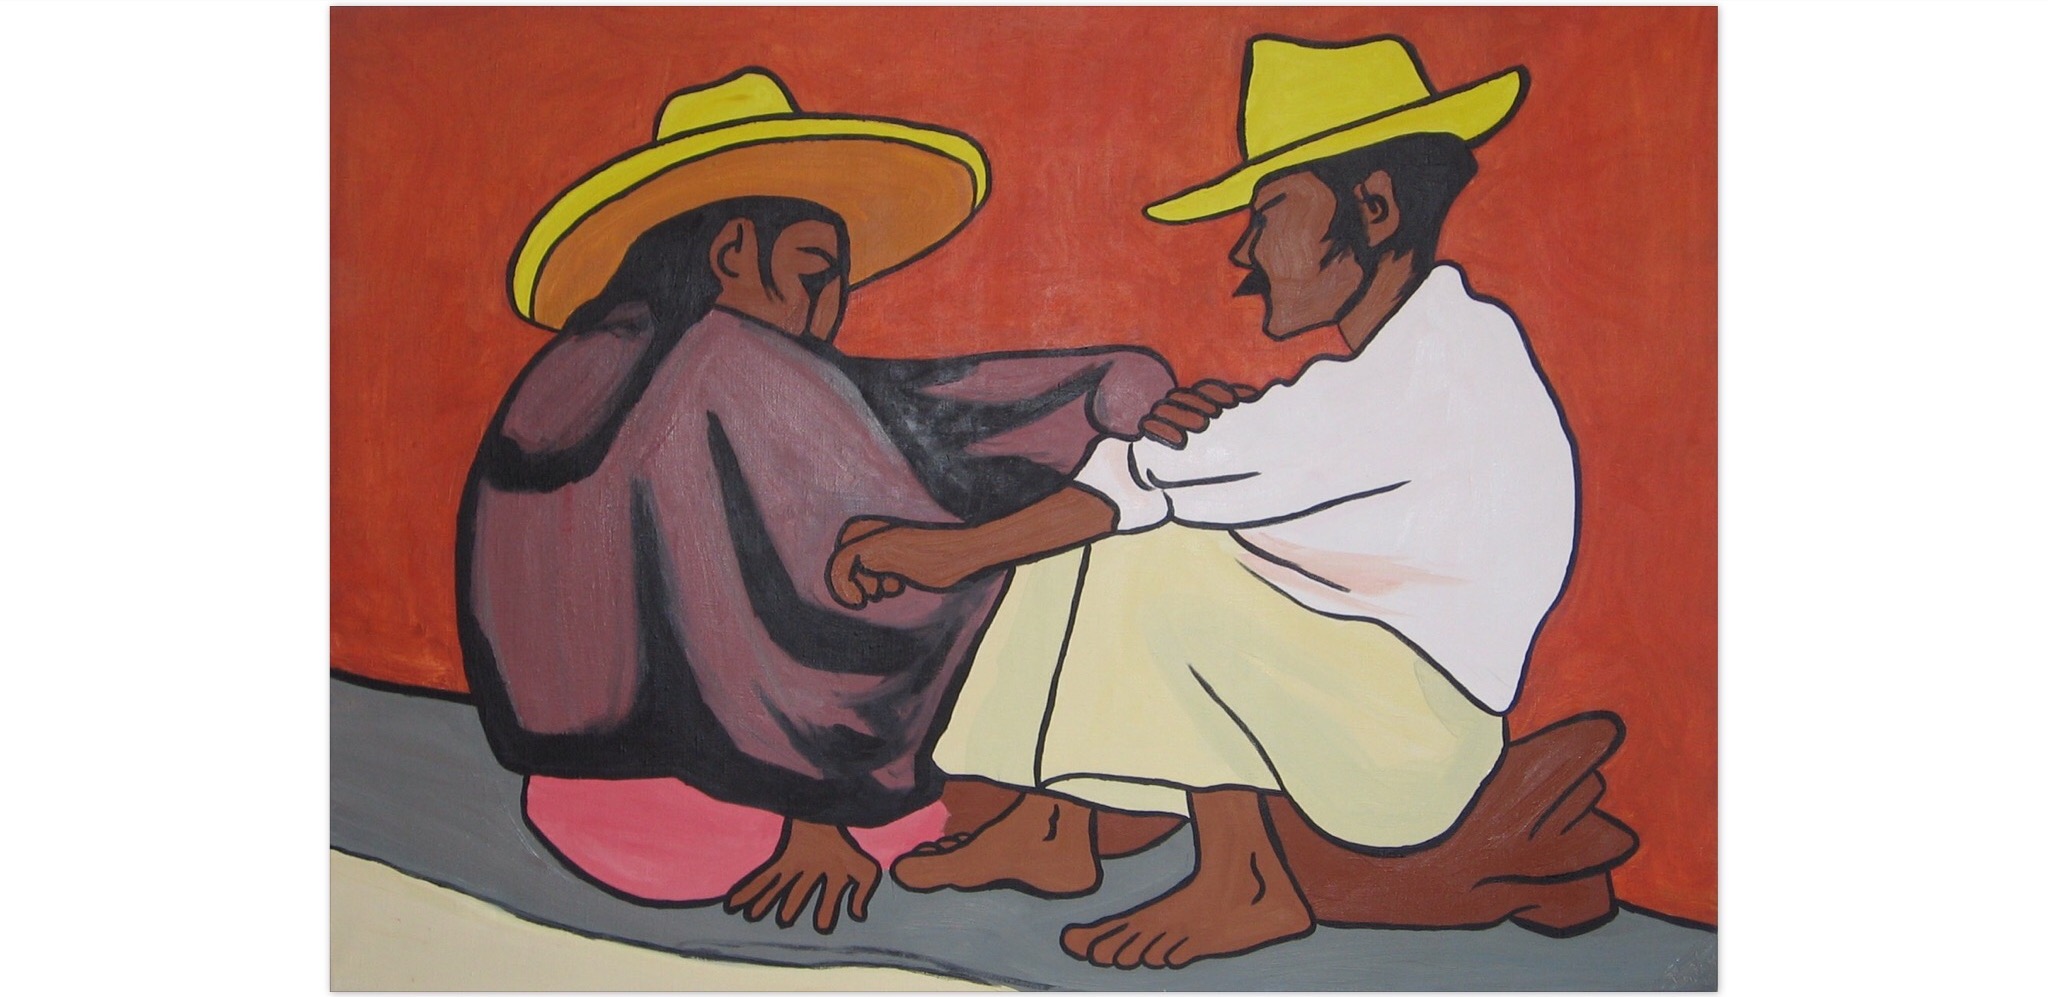 Pareja indijena by Diego Rivera